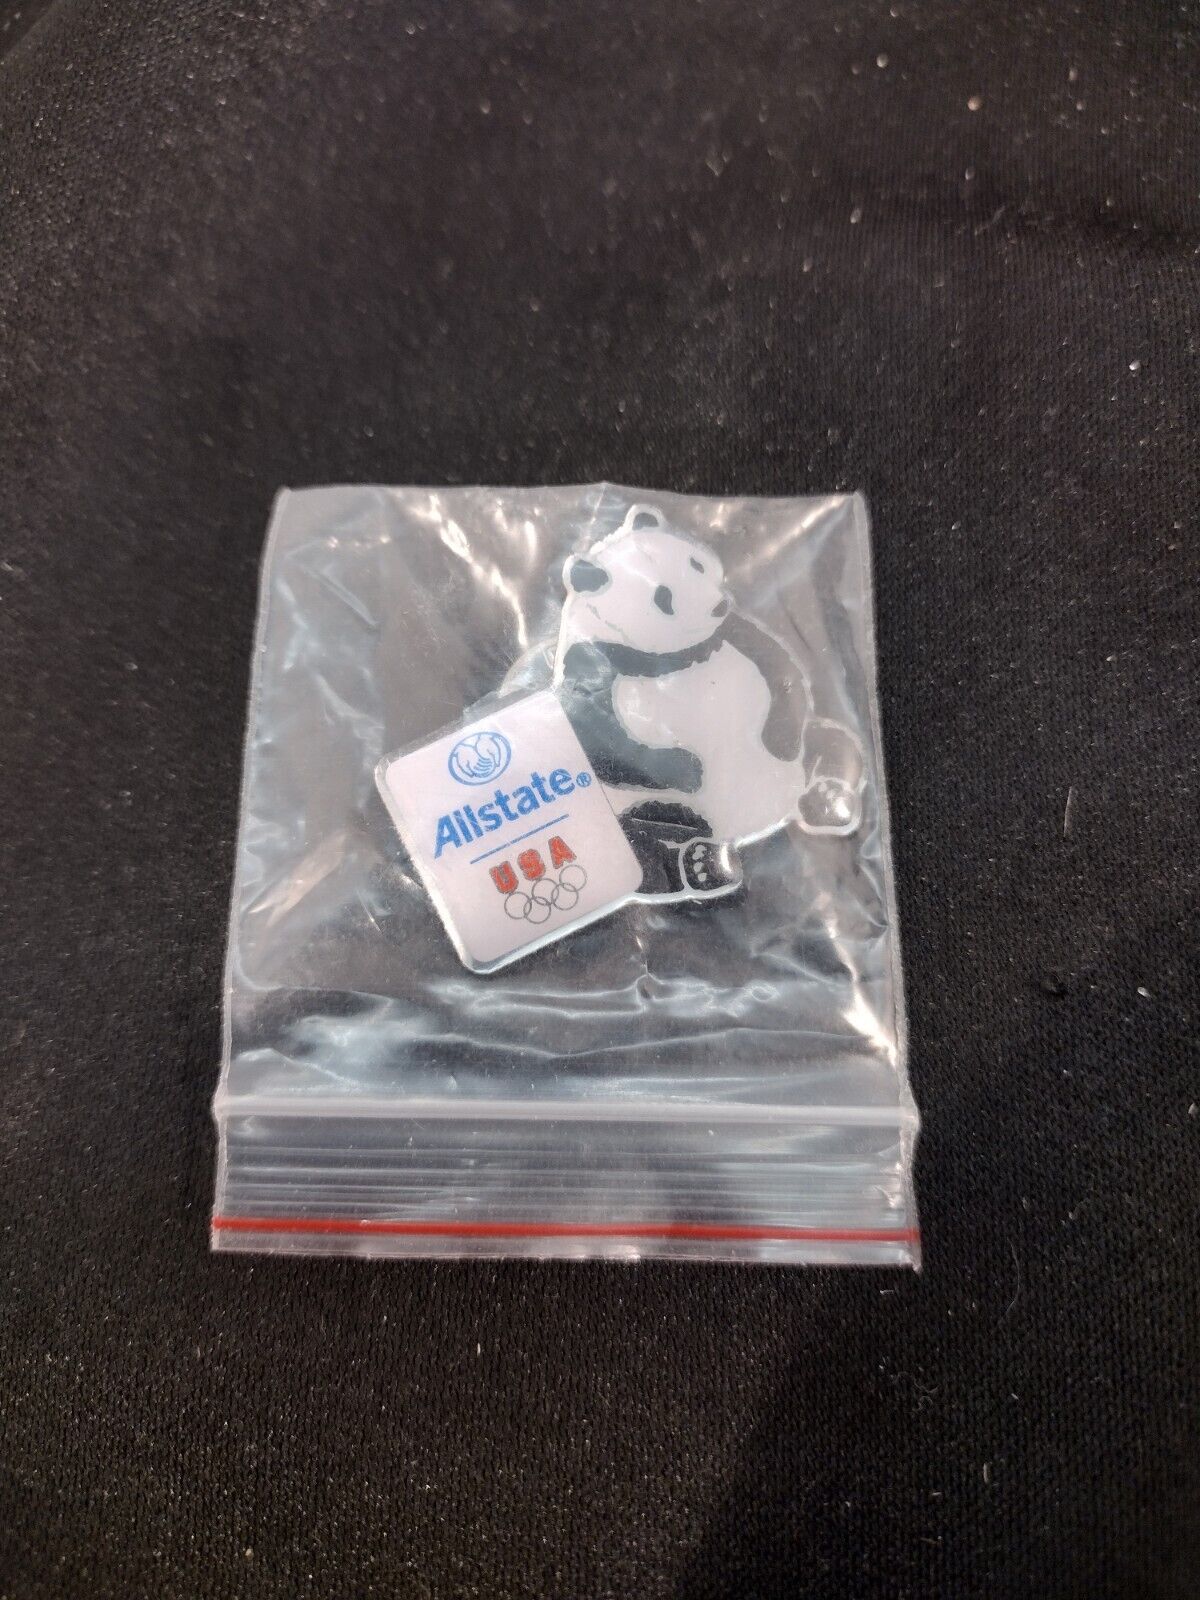 NOS Olympic Panda Advertising PIN Allstate HAT tie lapel pin 2006 GAMES USA